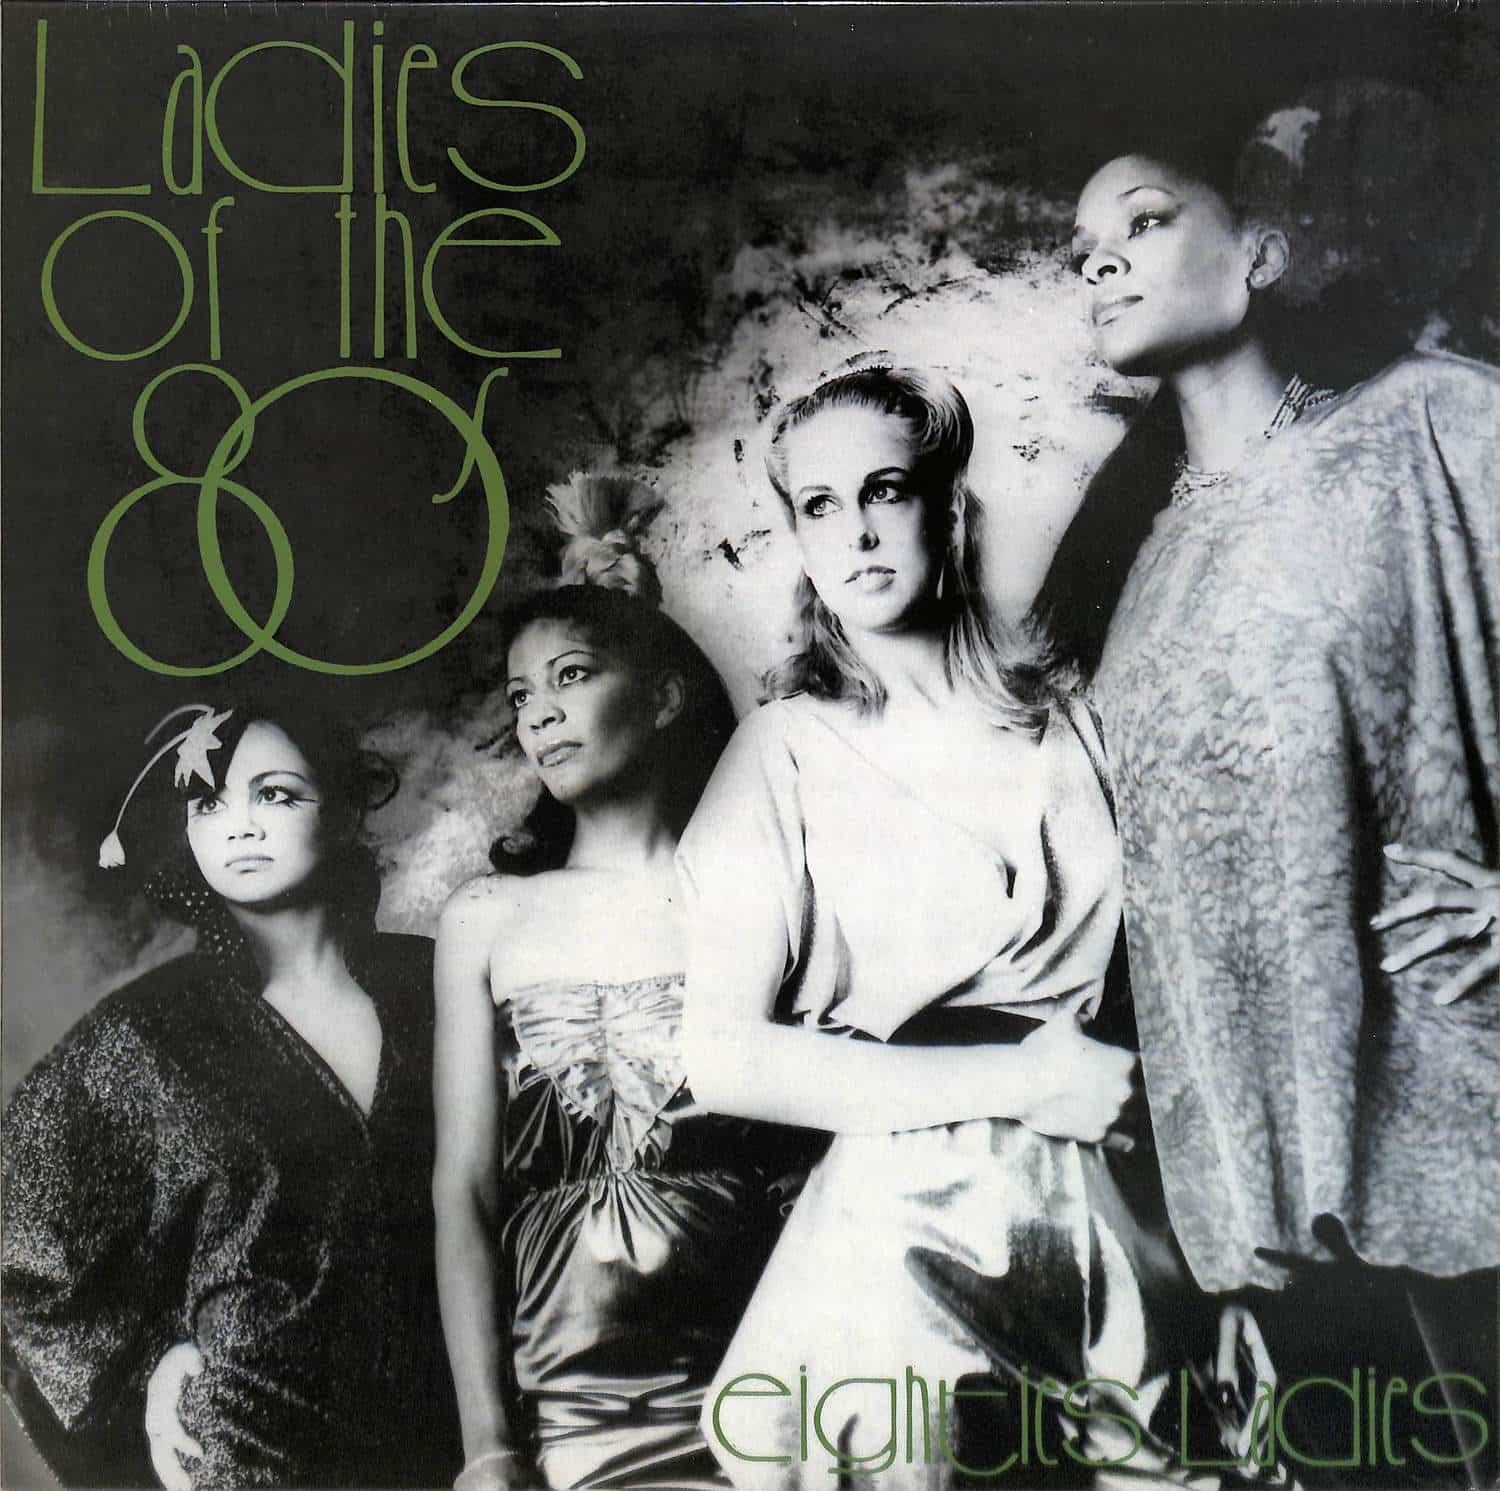 Eighties Ladies - LADIES OF THE EIGHTIES 